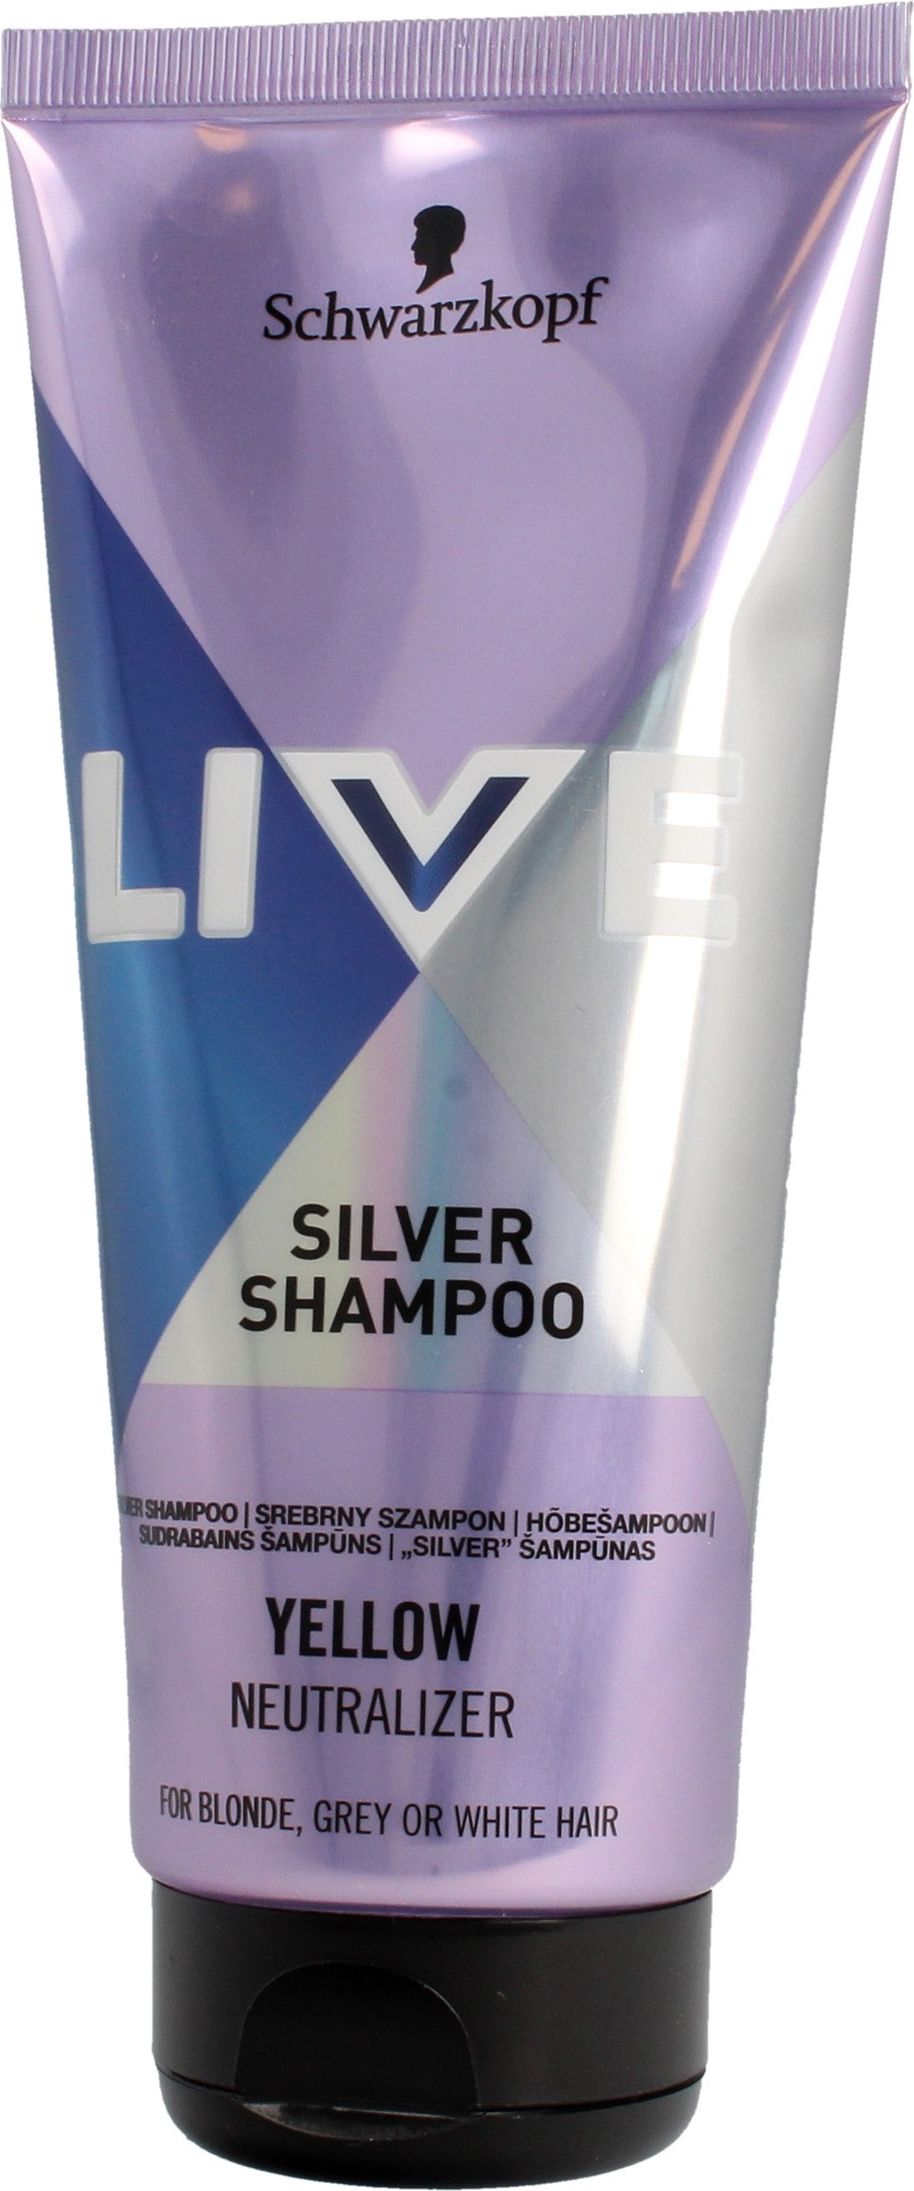 Schwarzkopf Live Szampon srebrny do wlosow blond, rozjasnionych i siwych 200ml 682999 (9000101222999) Matu šampūns